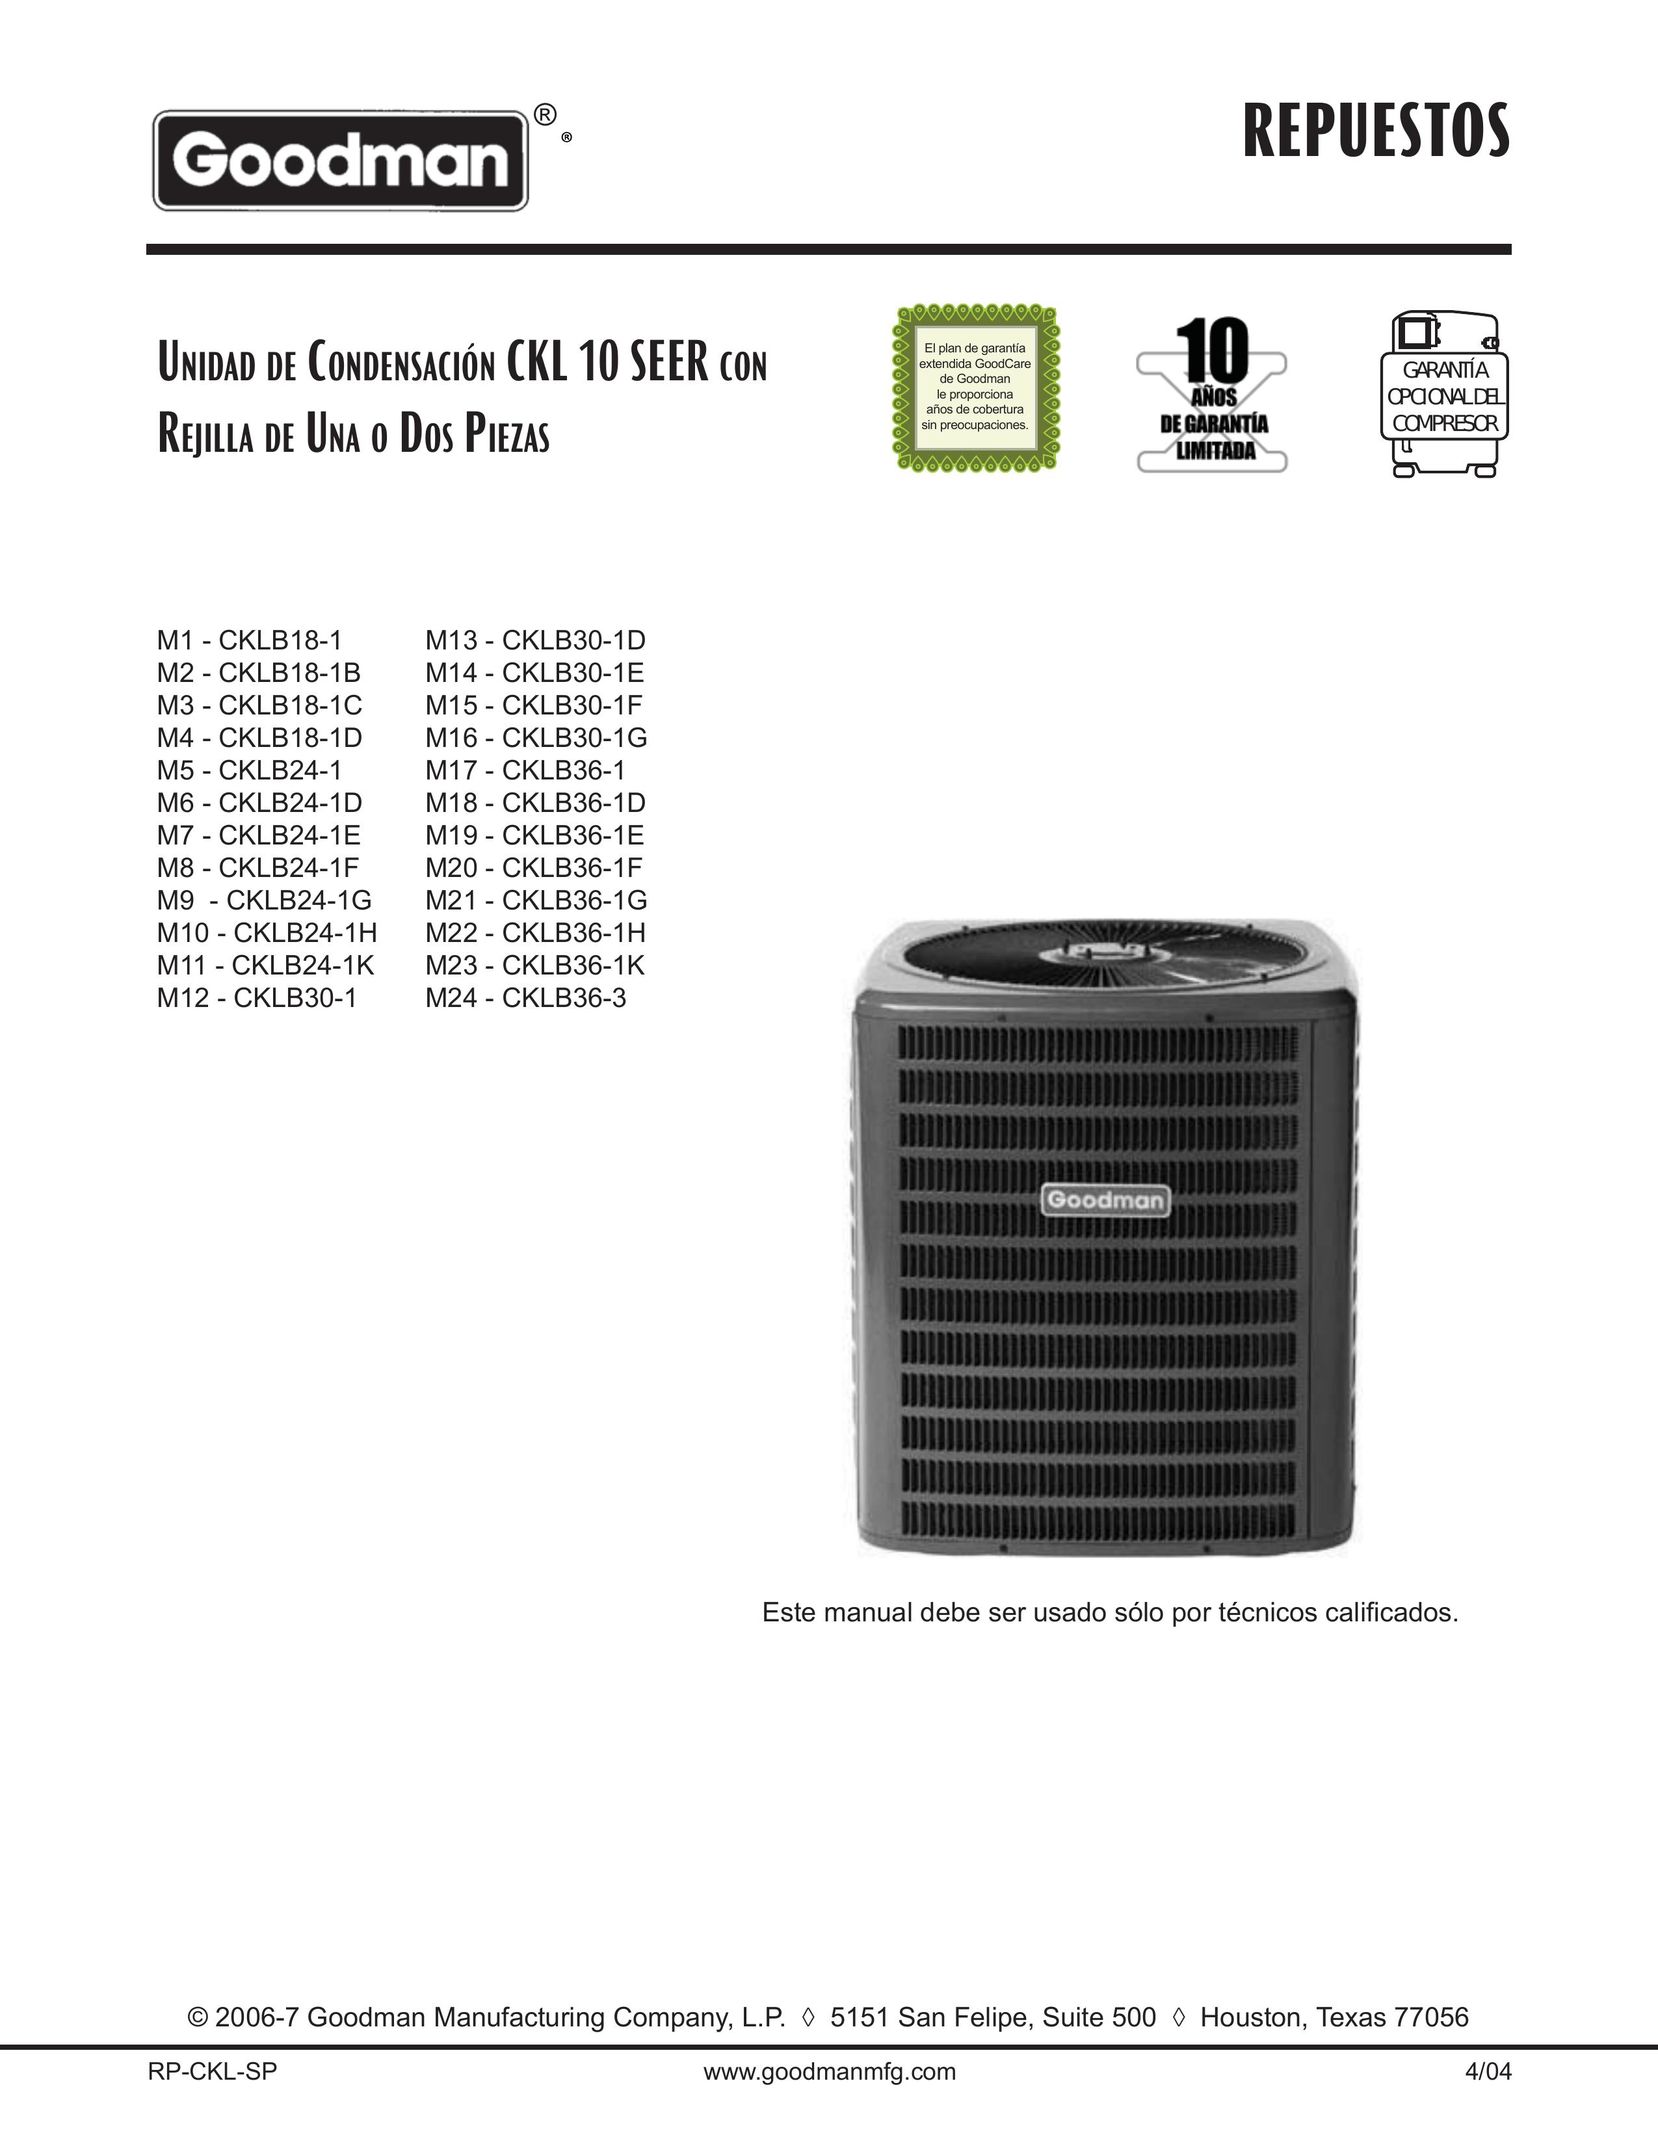 Goodman Mfg CKLB24-1G Air Conditioner User Manual